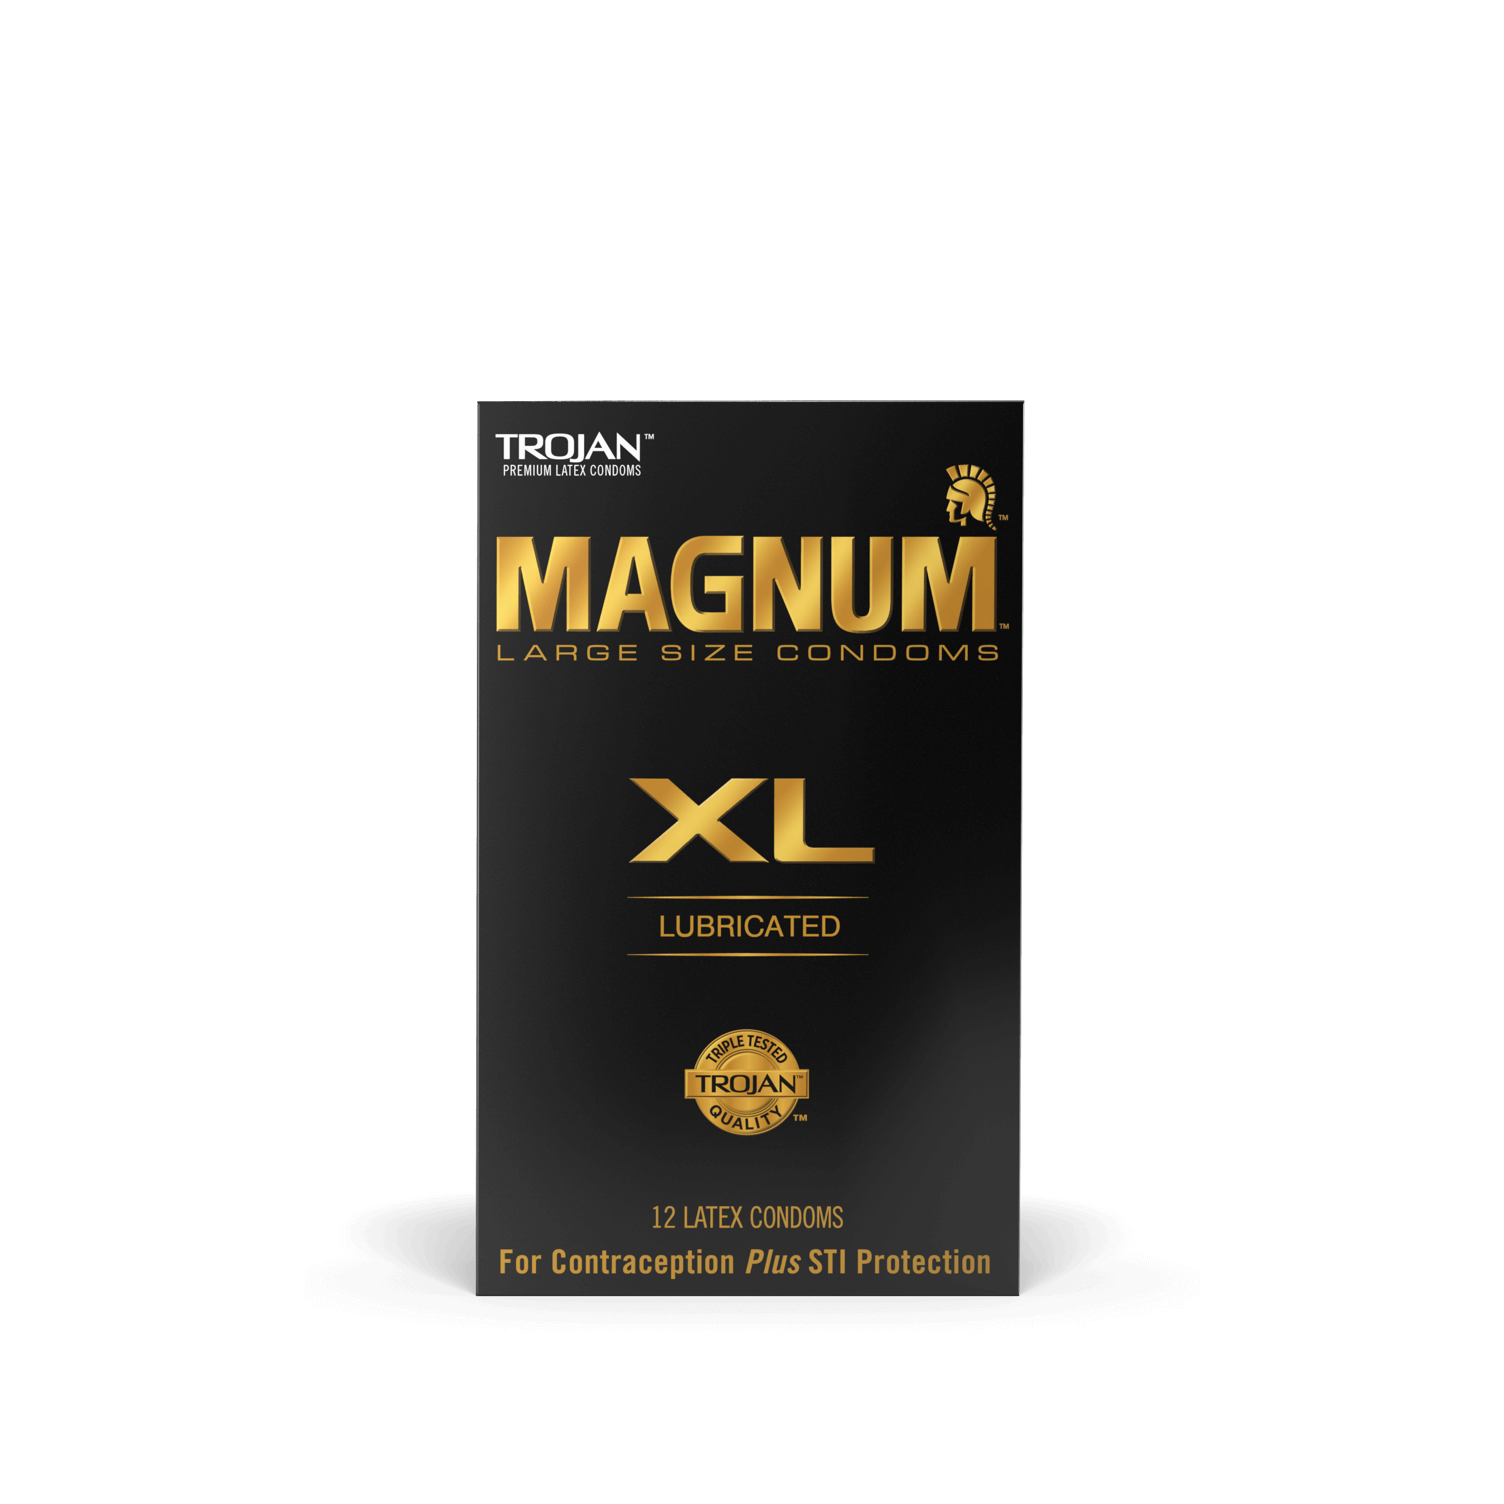 Magnum Extra Large Condoms.